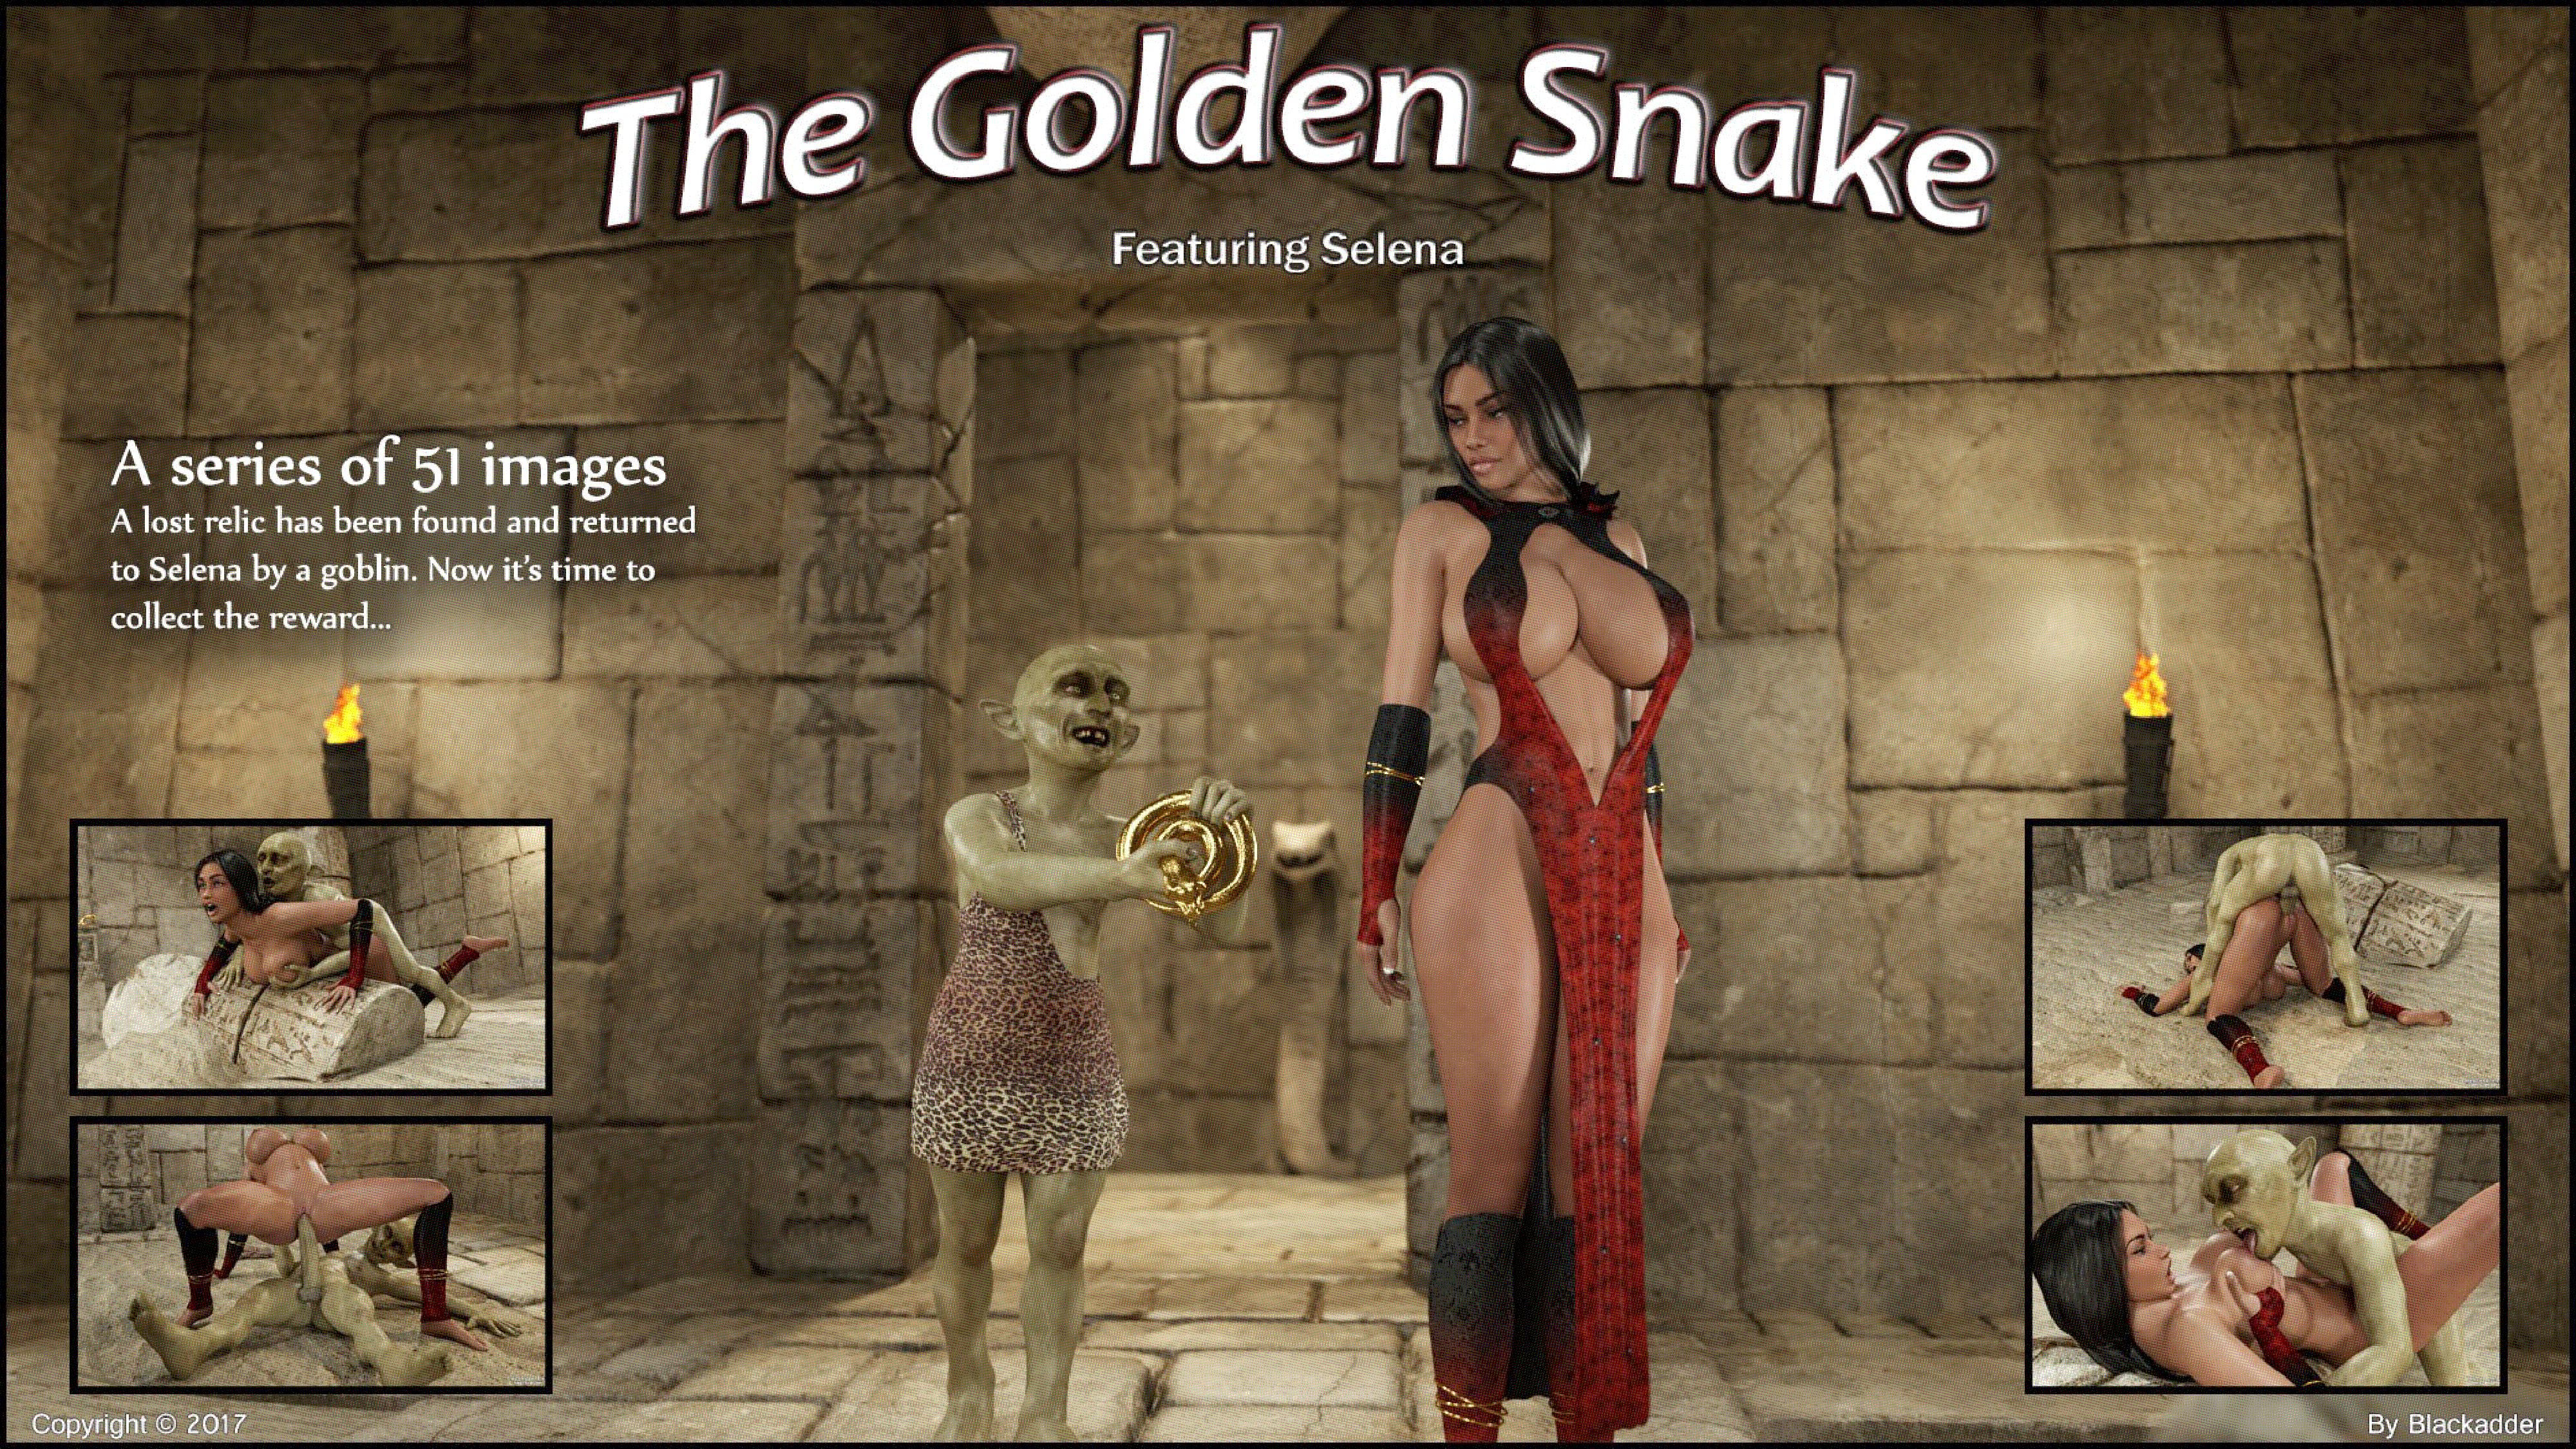 Blackadder – The Golden Snake